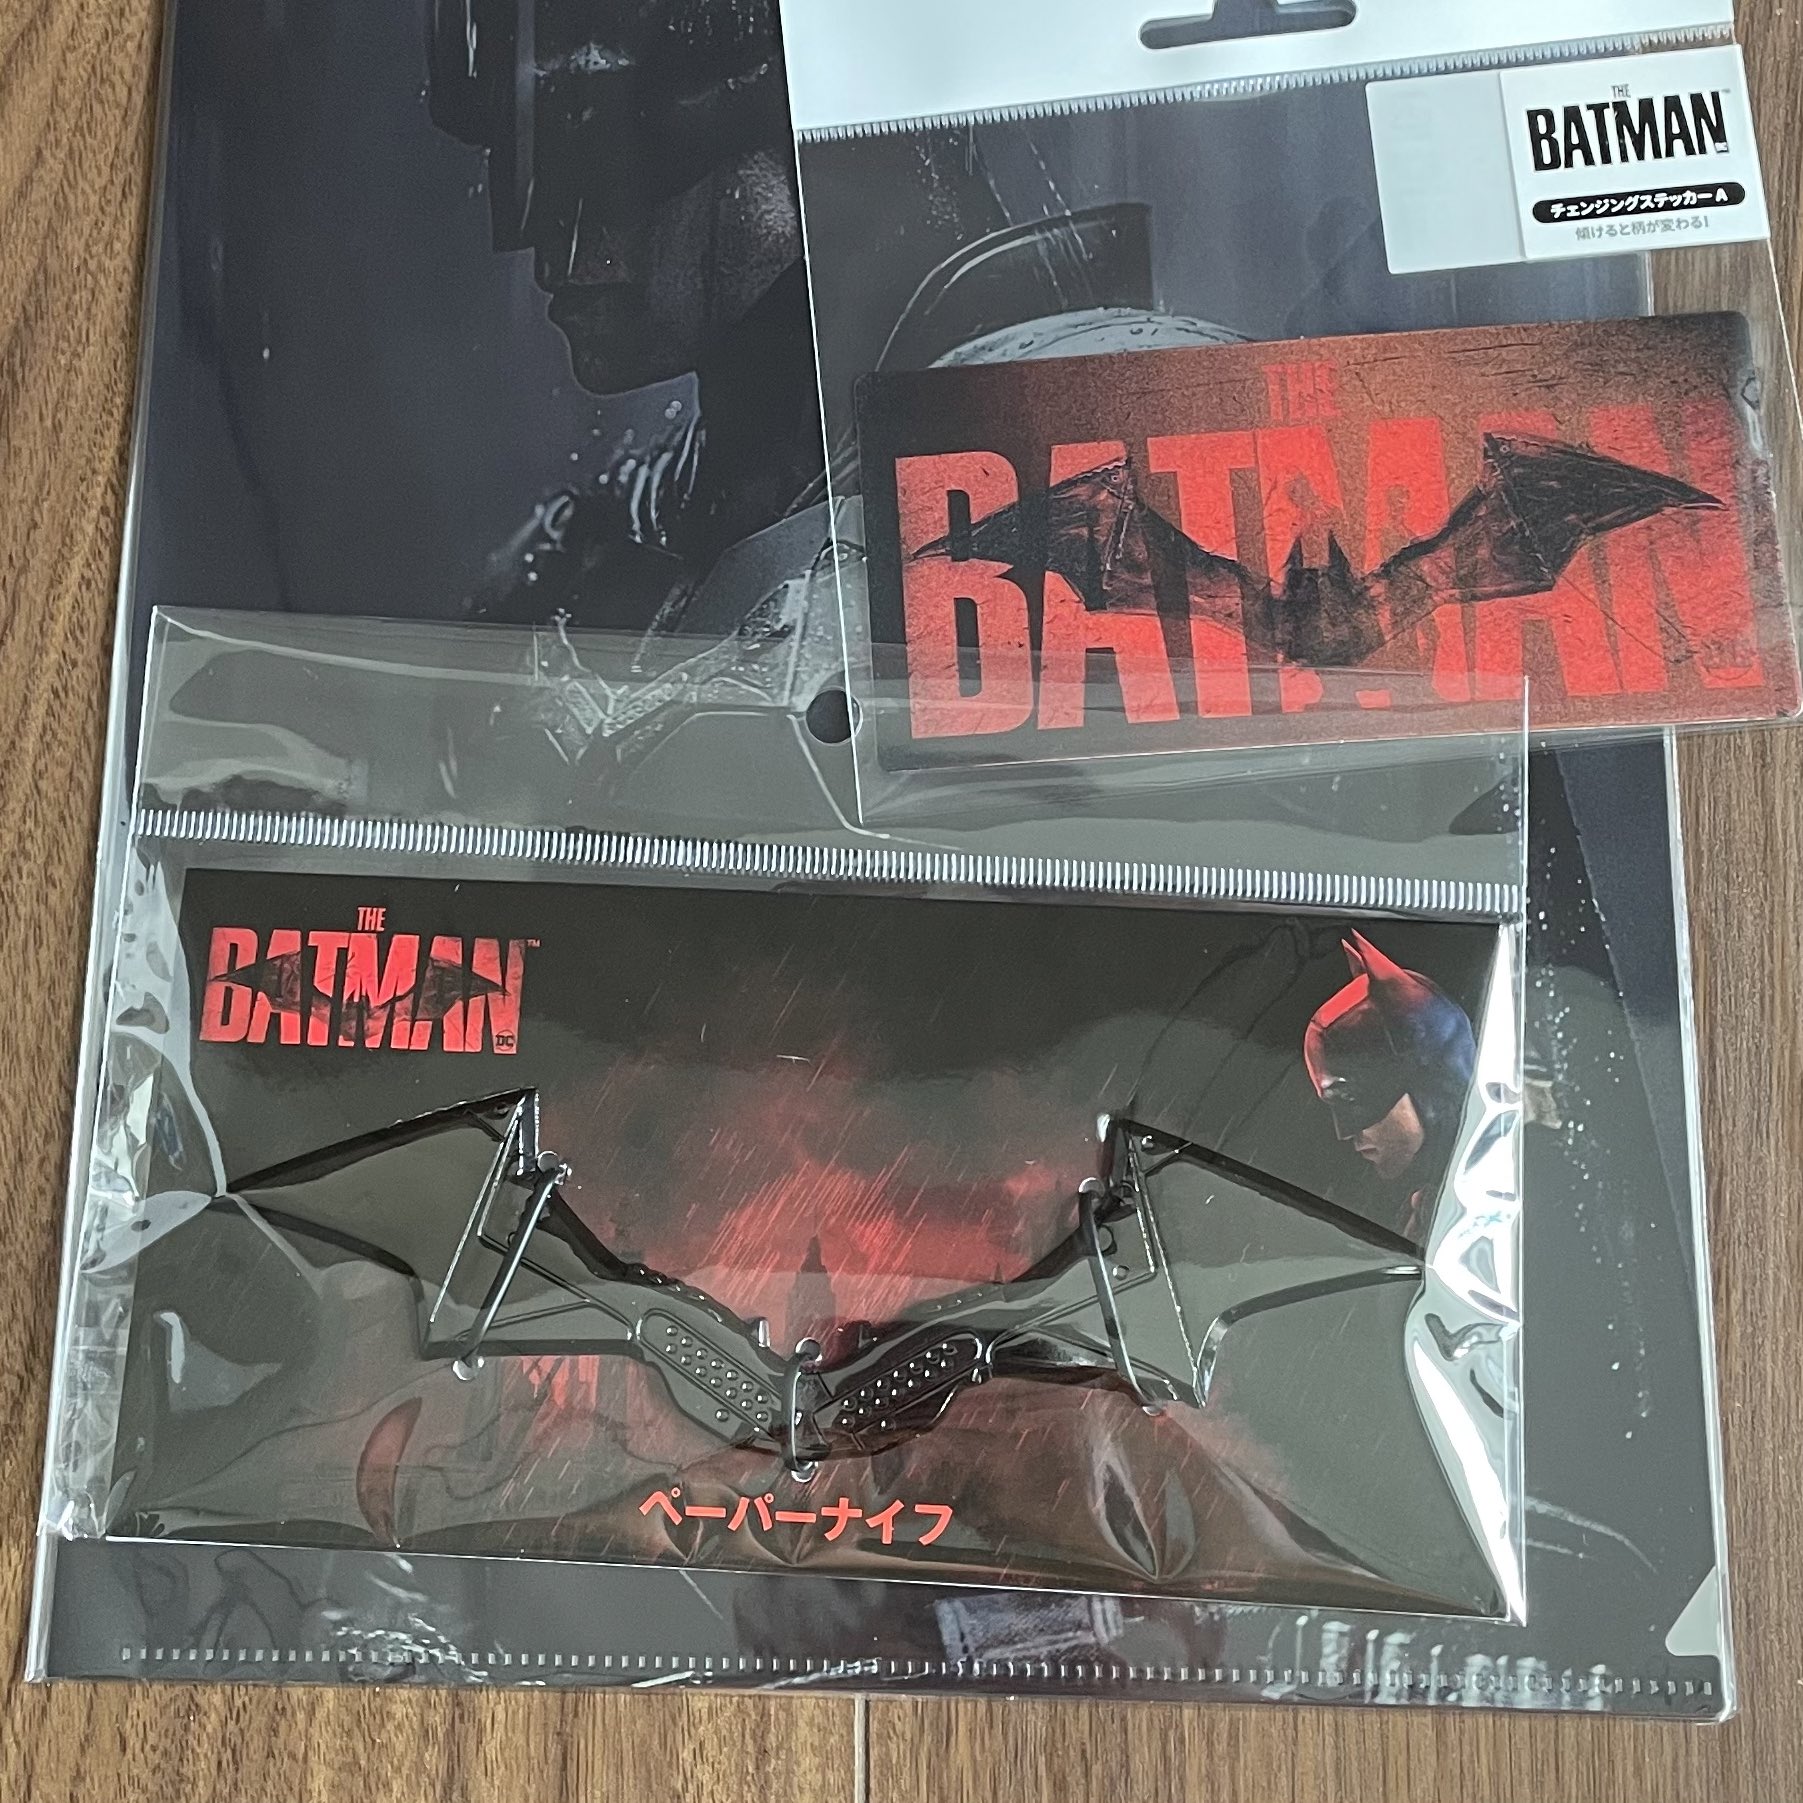 THE BATMAN Blu-rayスチールブックペーパーナイフアートカード